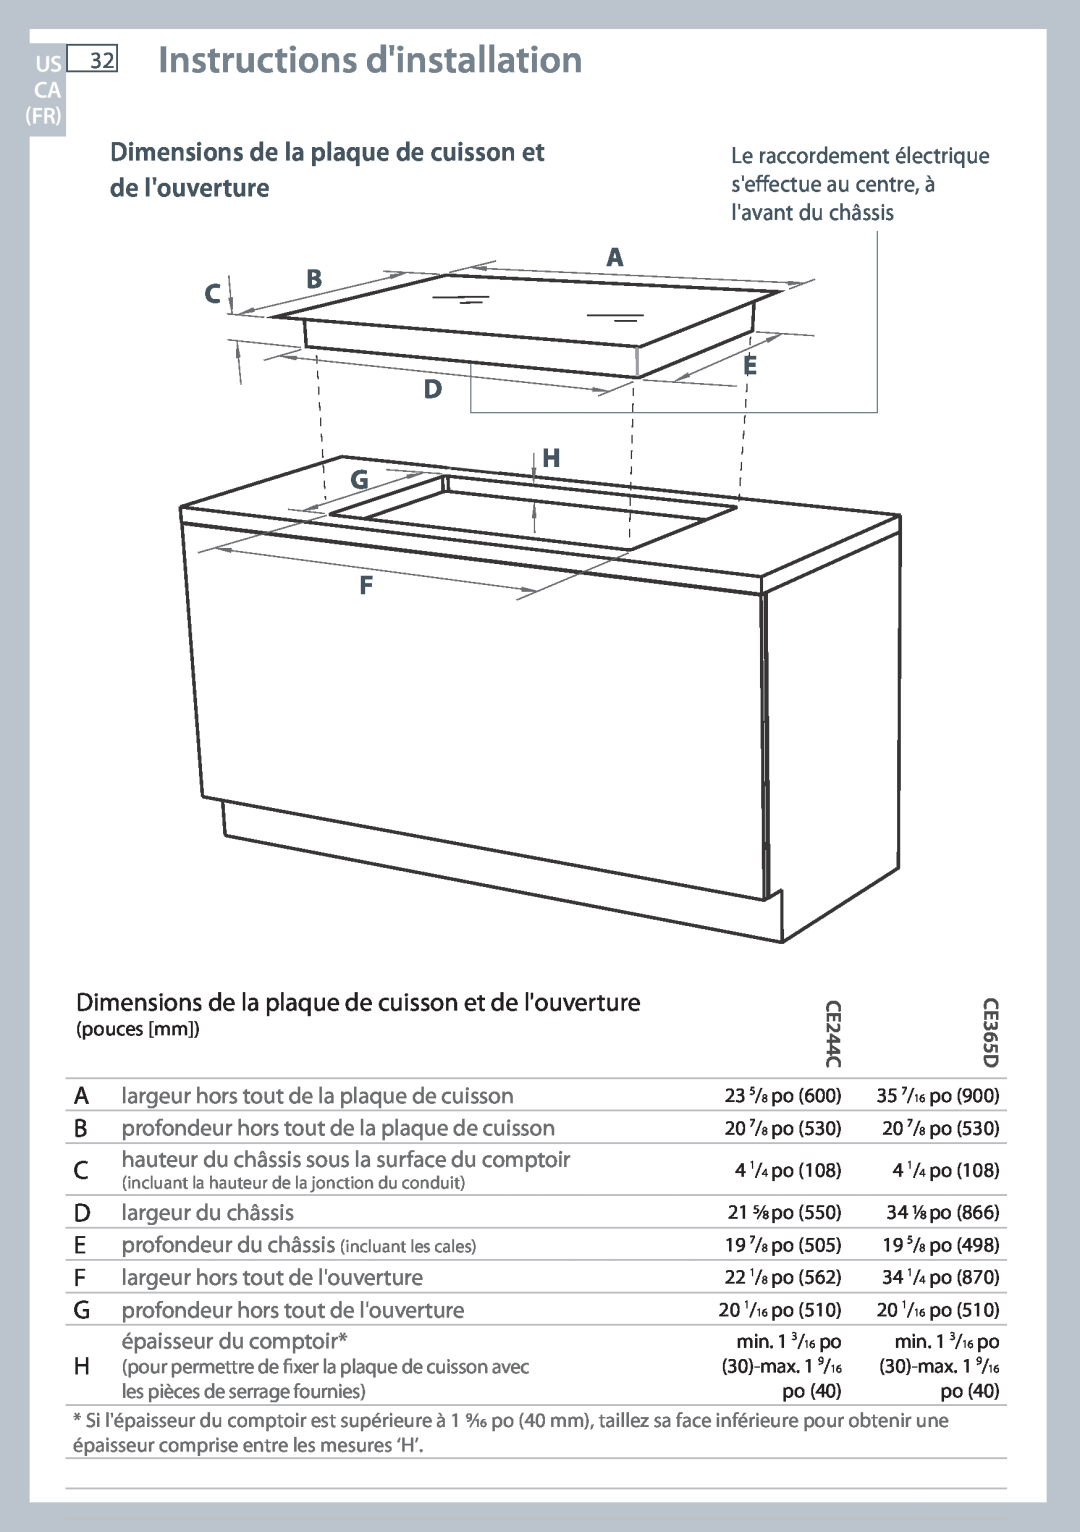 Fisher & Paykel CE244C Instructions dinstallation, Dimensions de la plaque de cuisson et de louverture, H G F, pouces mm 